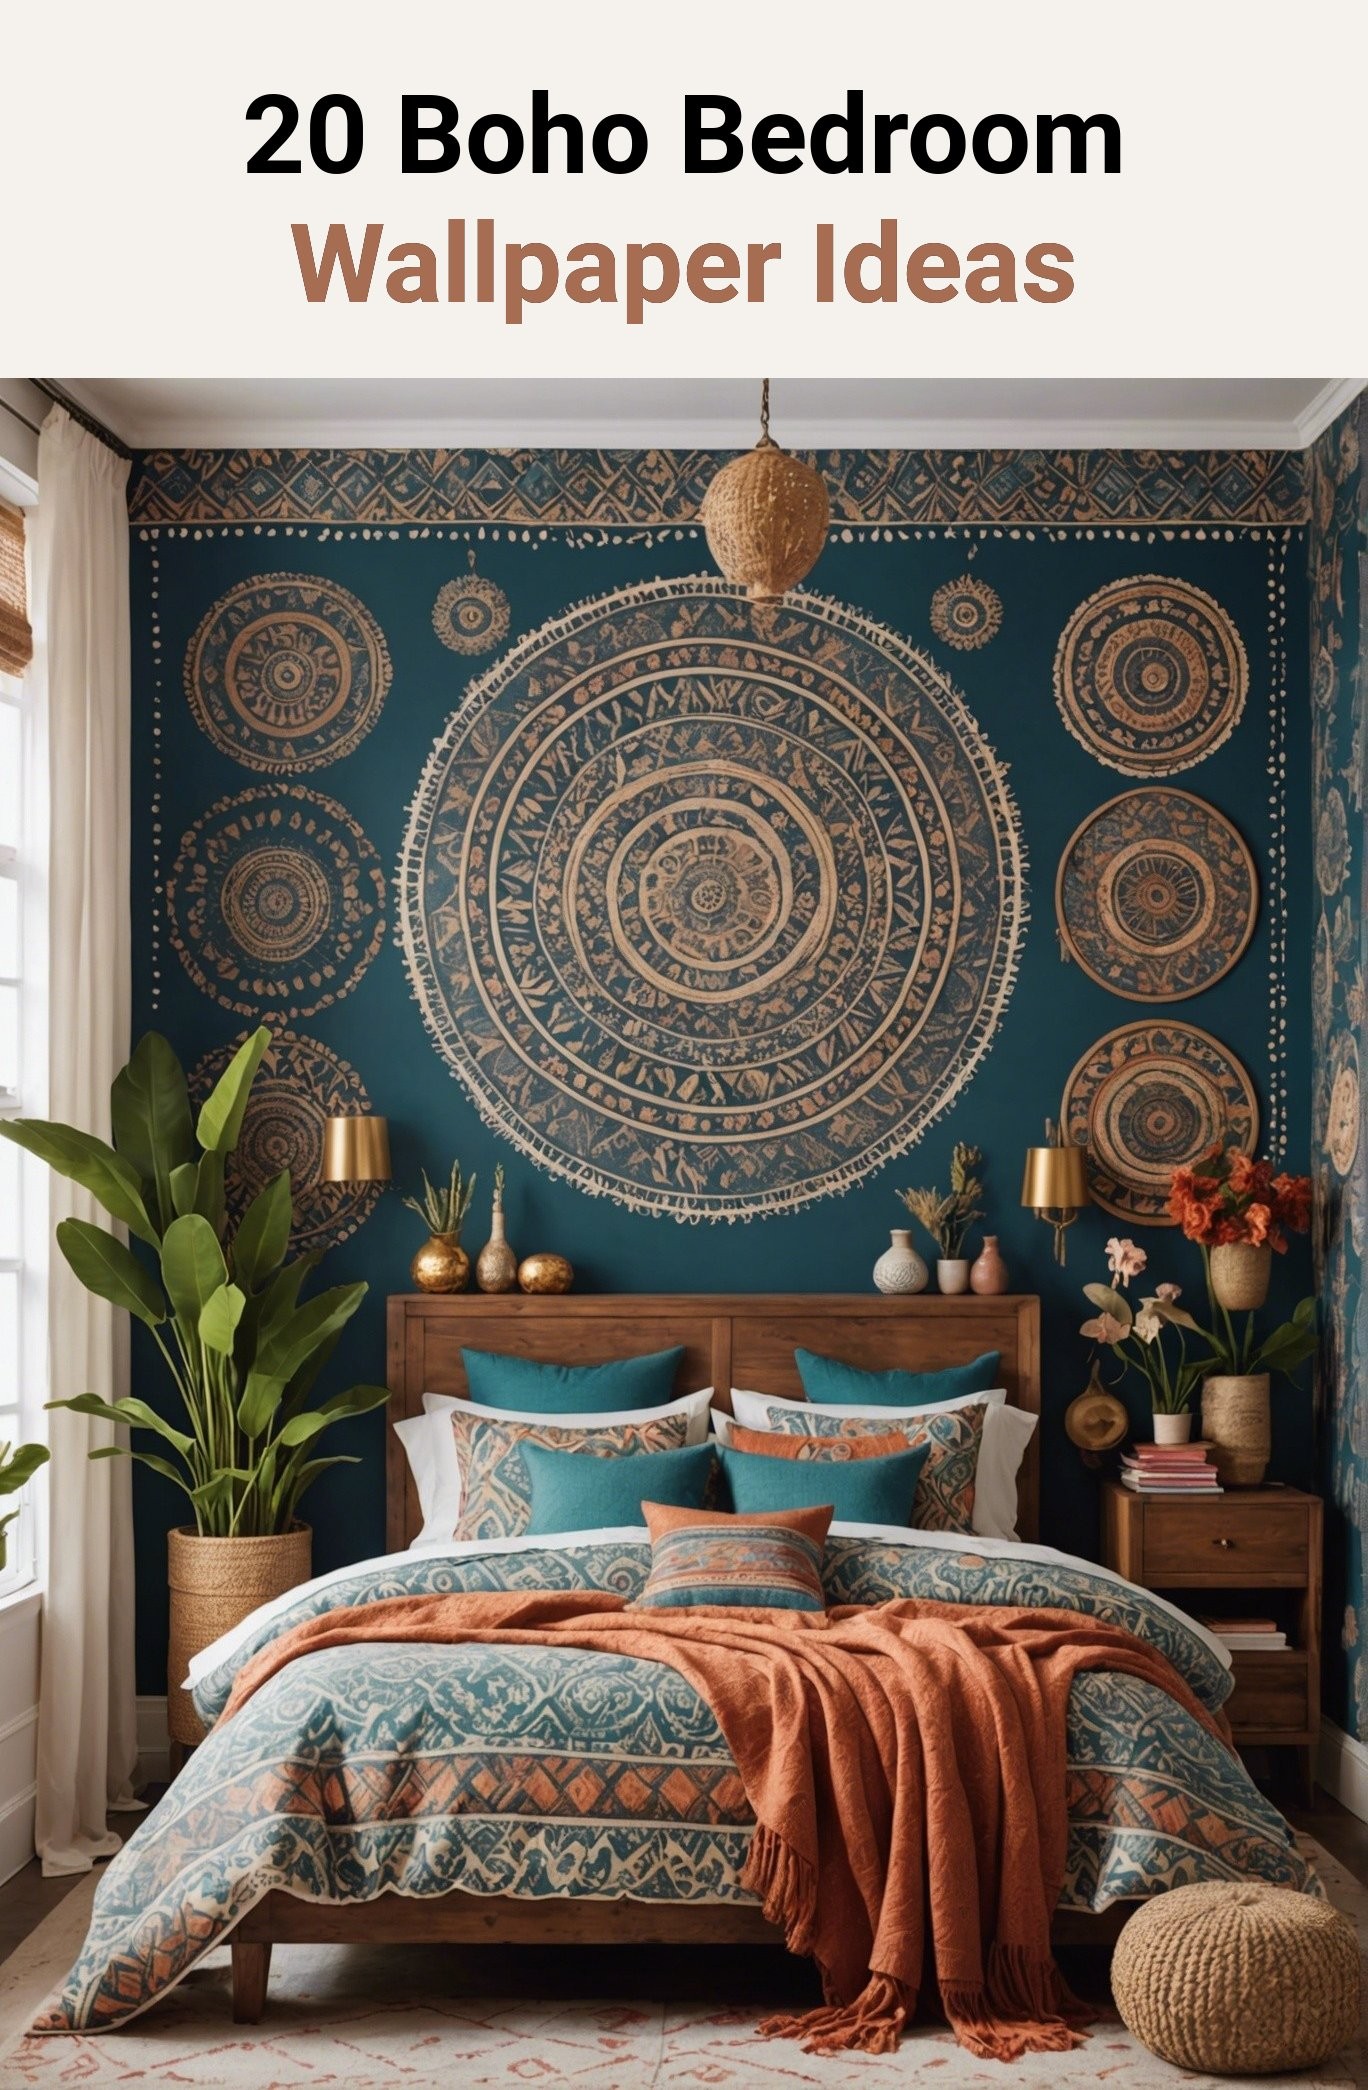 20 Boho Bedroom Wallpaper Ideas